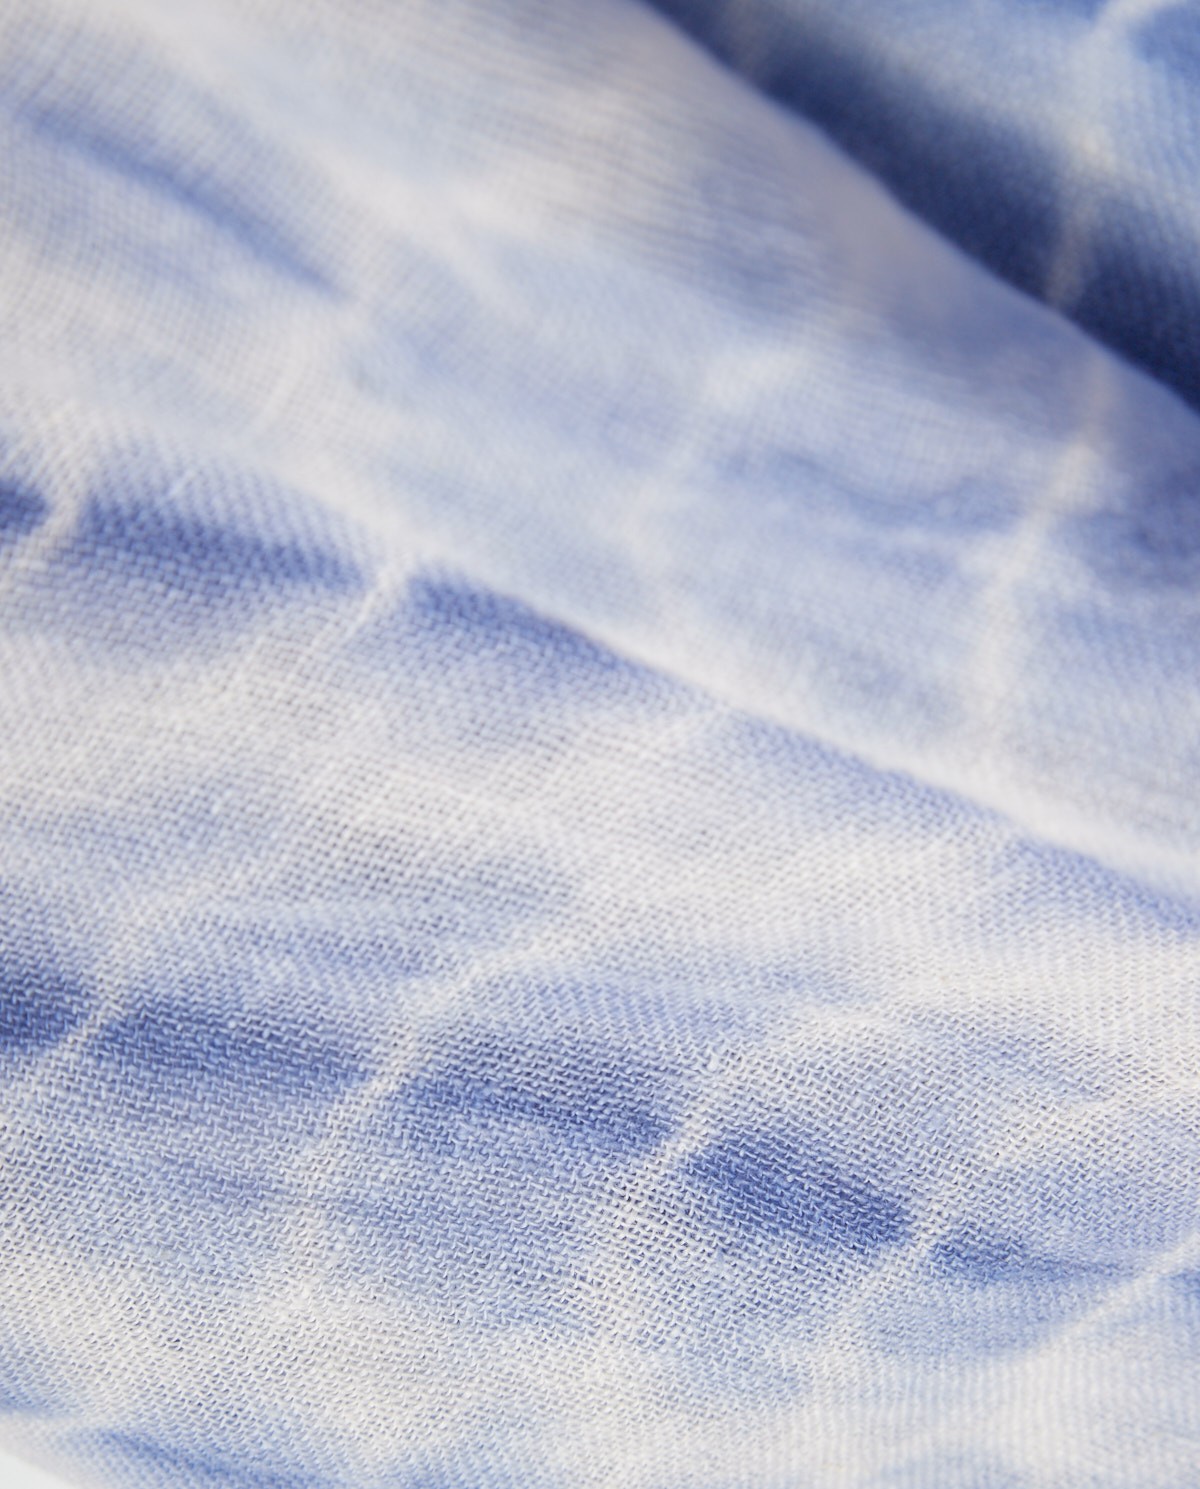 Fulard lli tie-dye BLUE 1